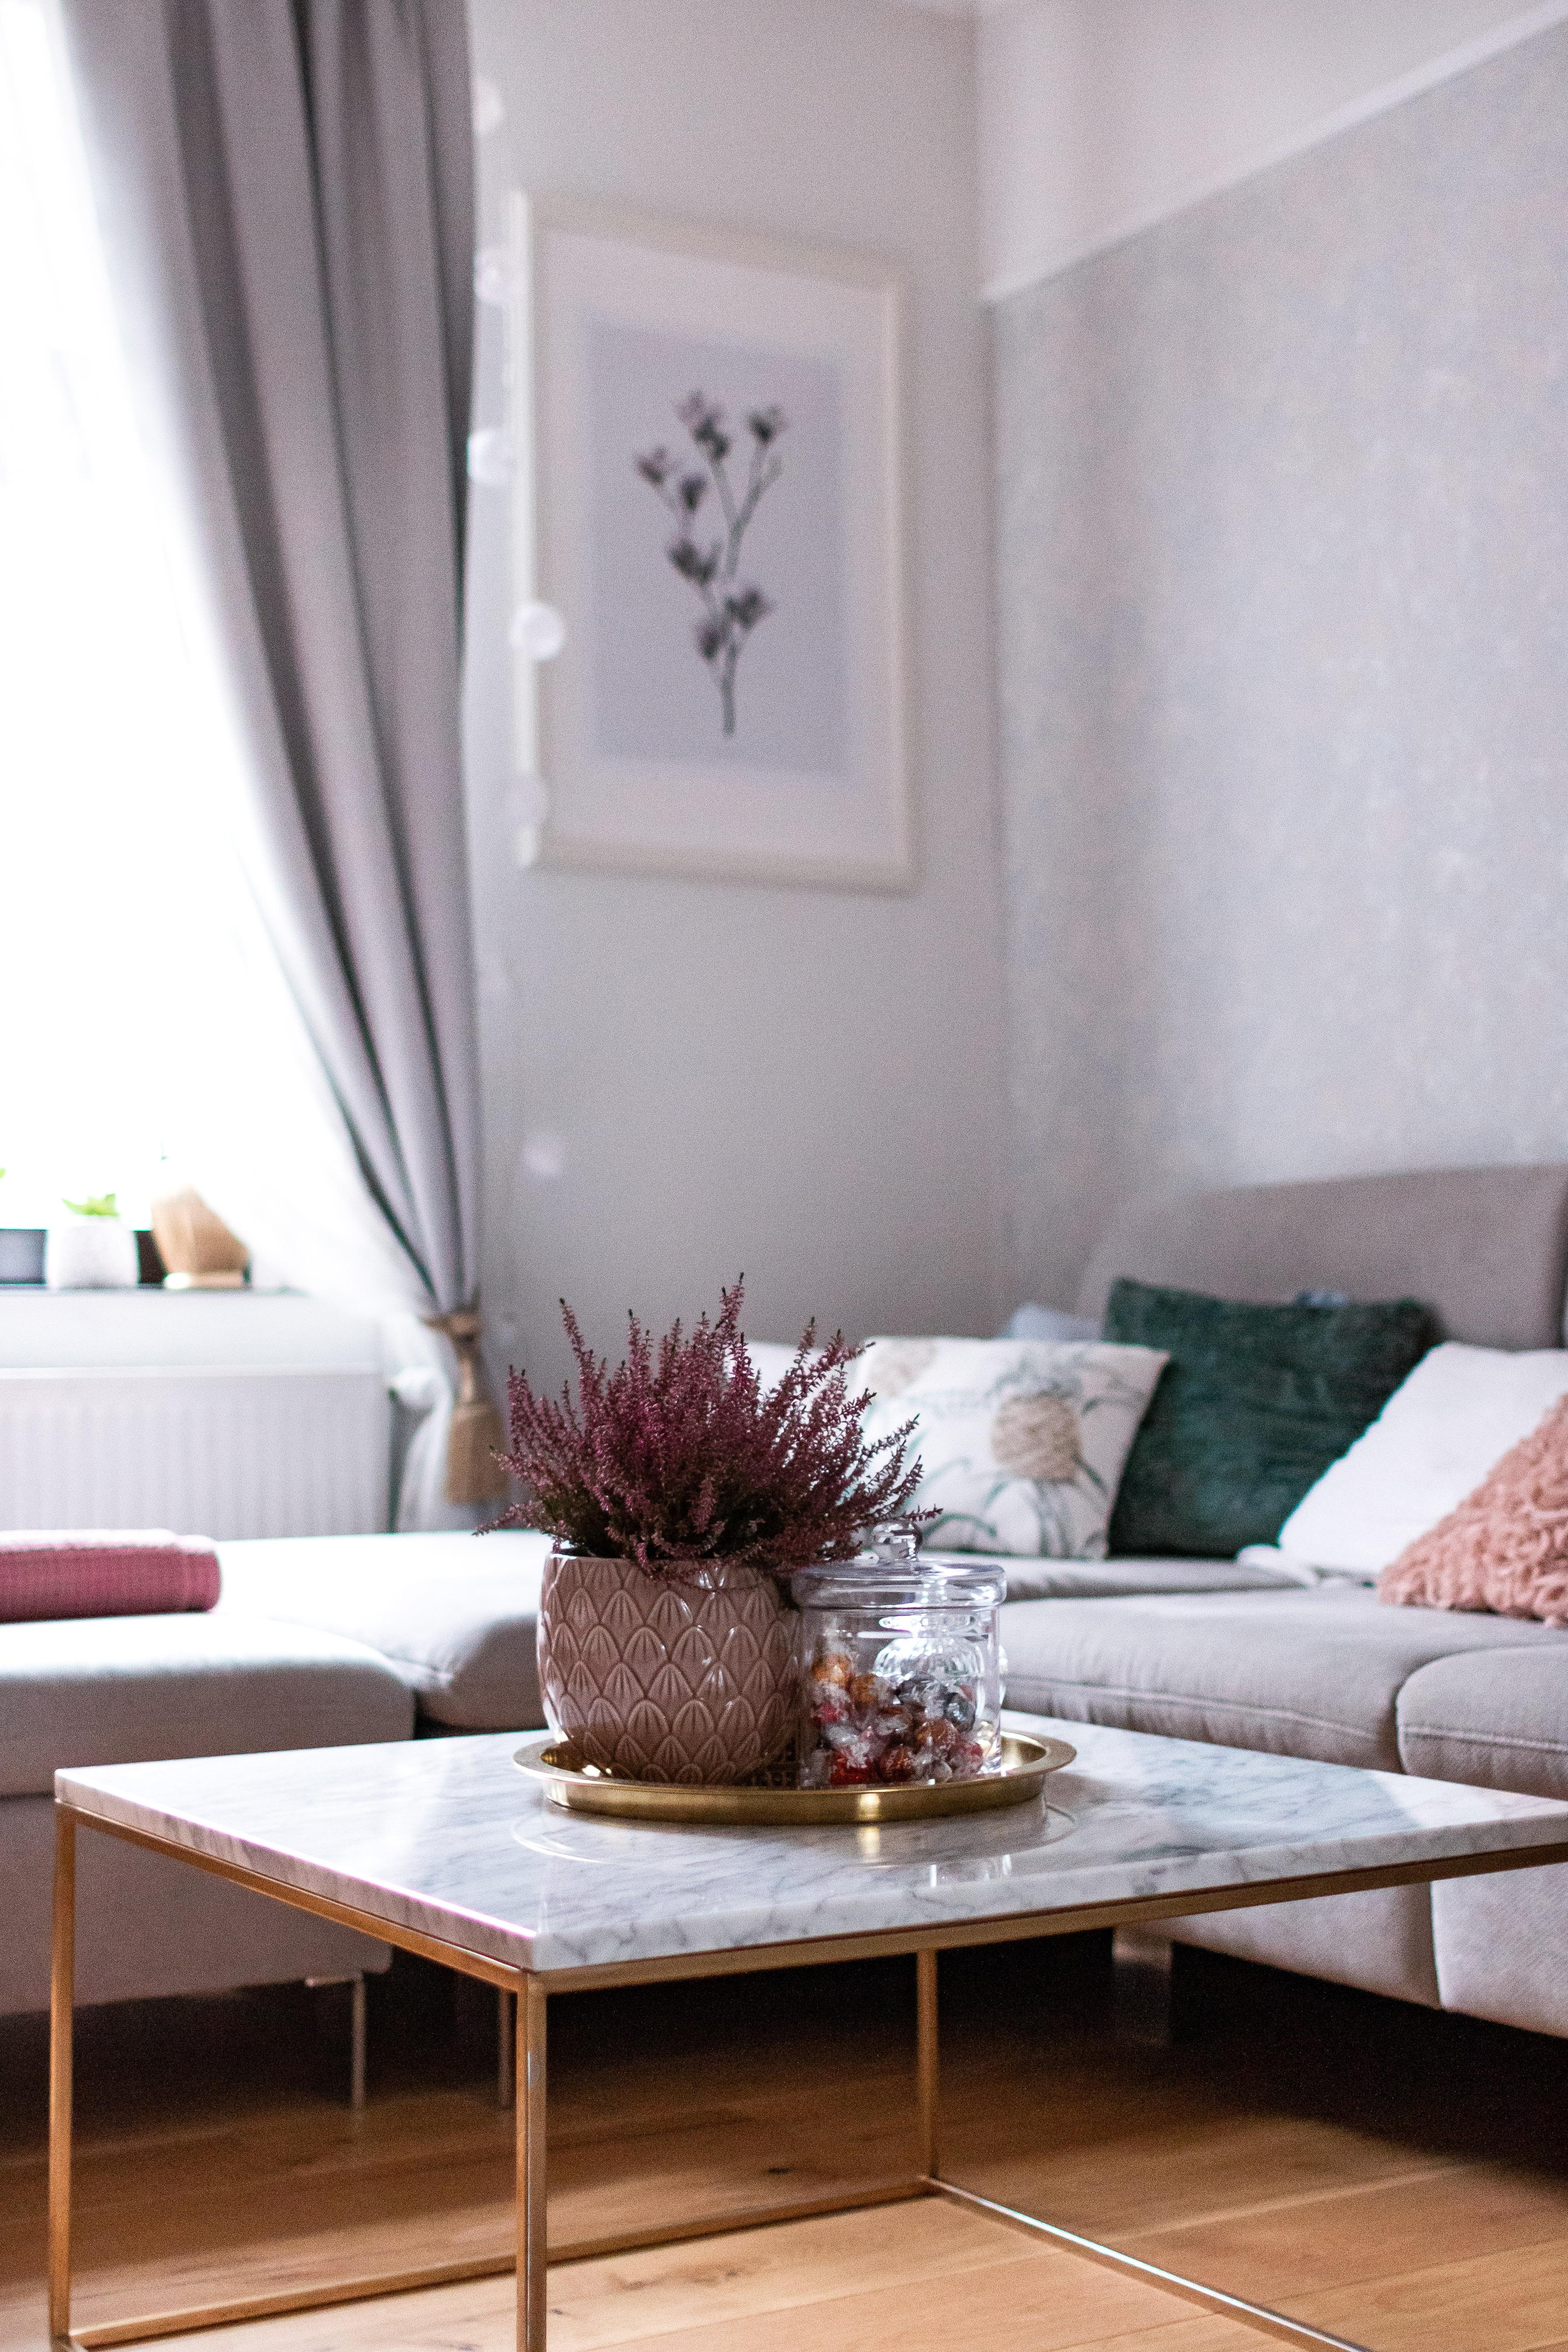 Unser Couchtisch aus Marmor.
#marmor #Couchtisch #Couch #Wohnzimmer #inspiration